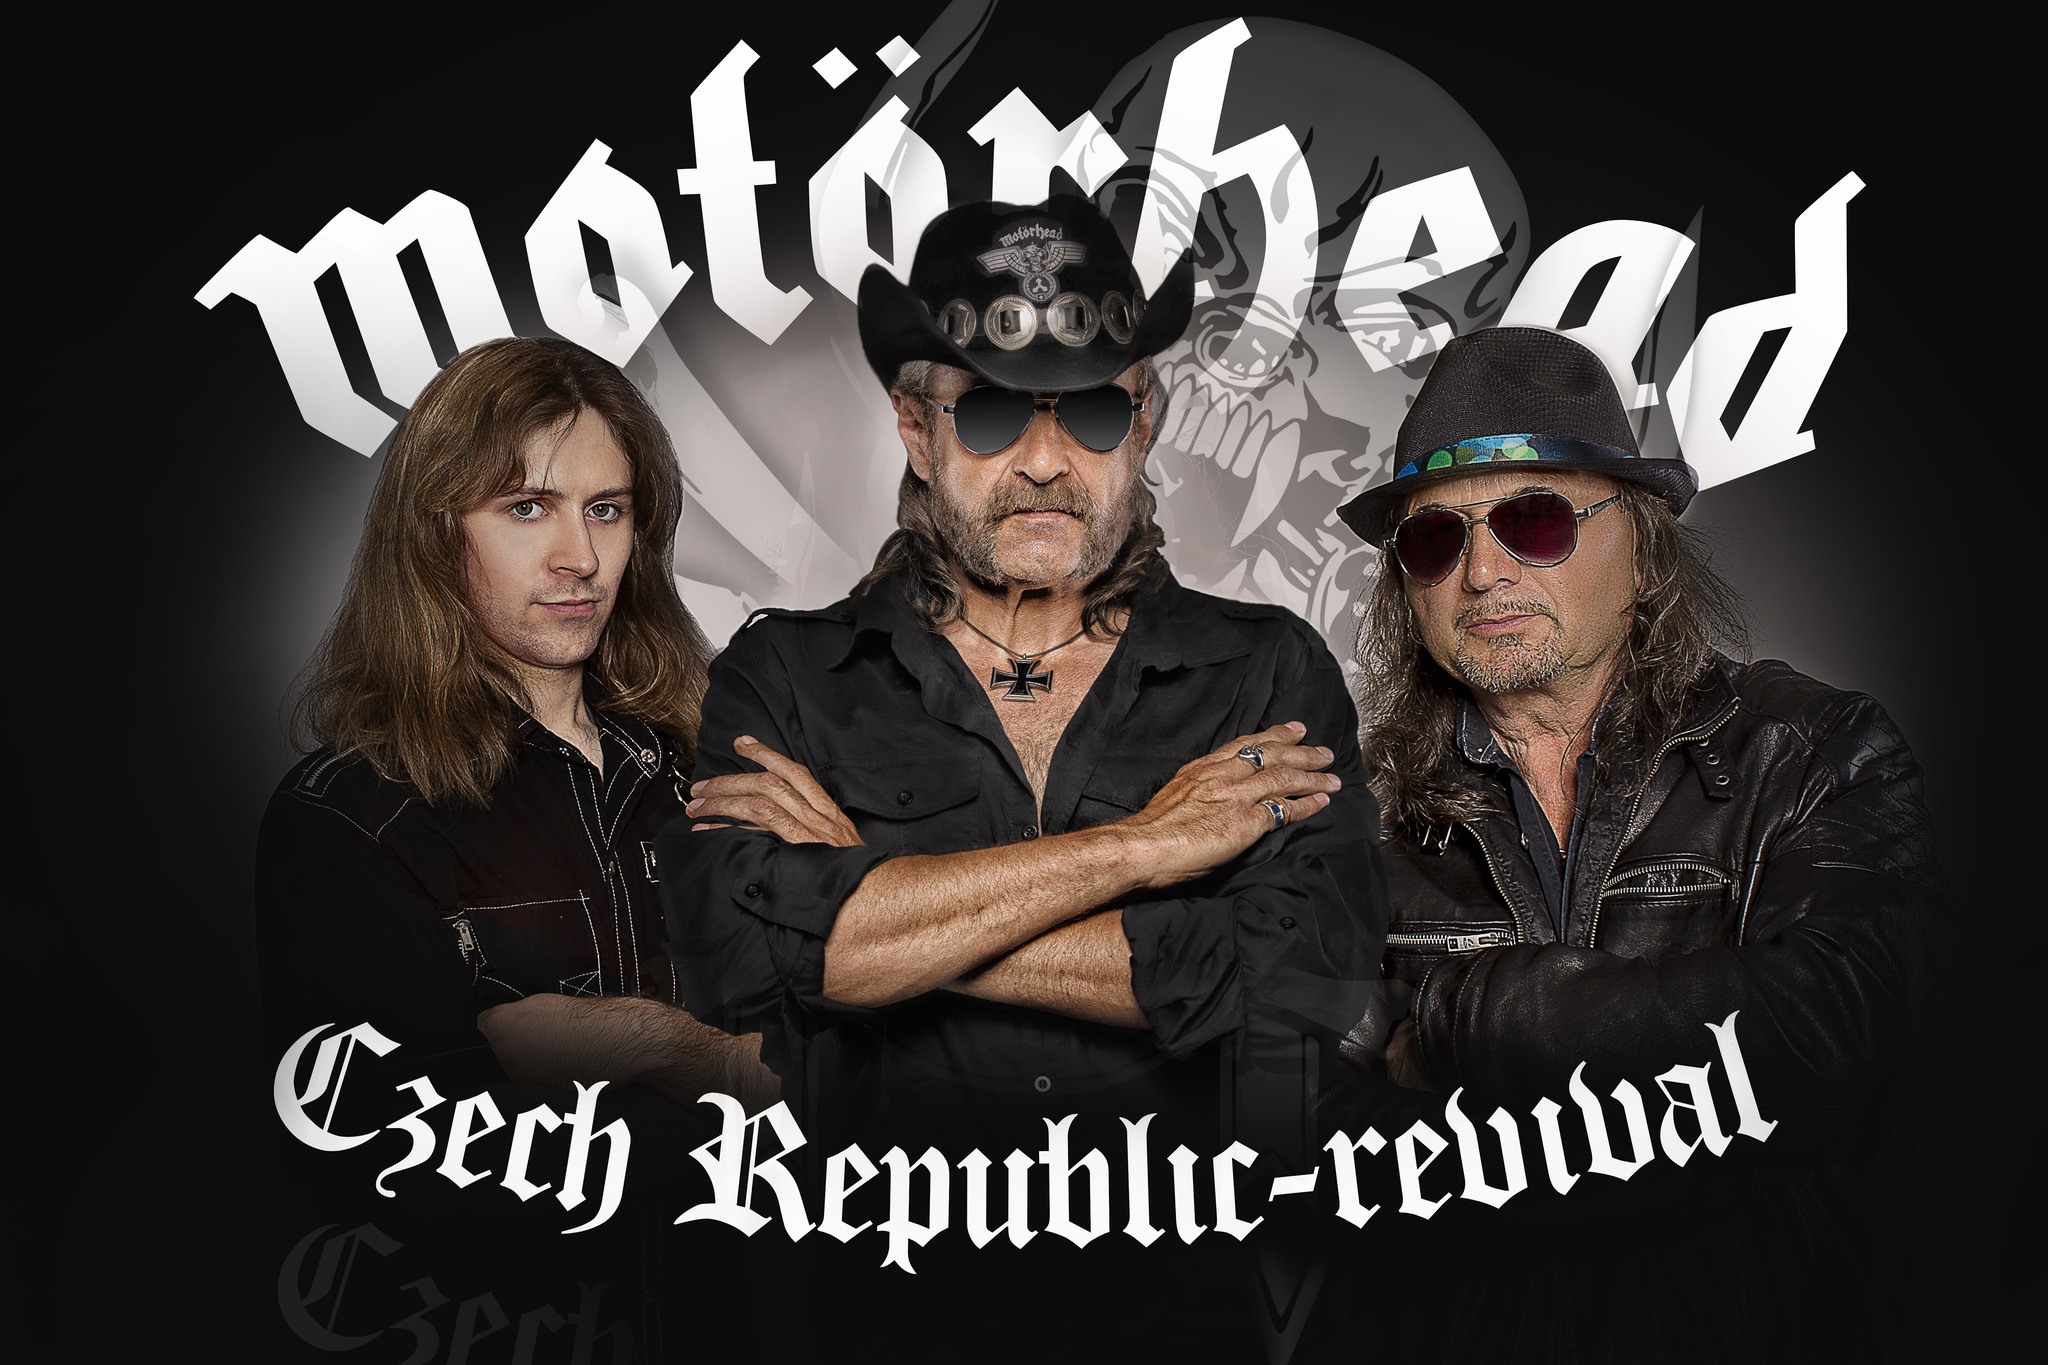 Motorhead Czech Republic Revival